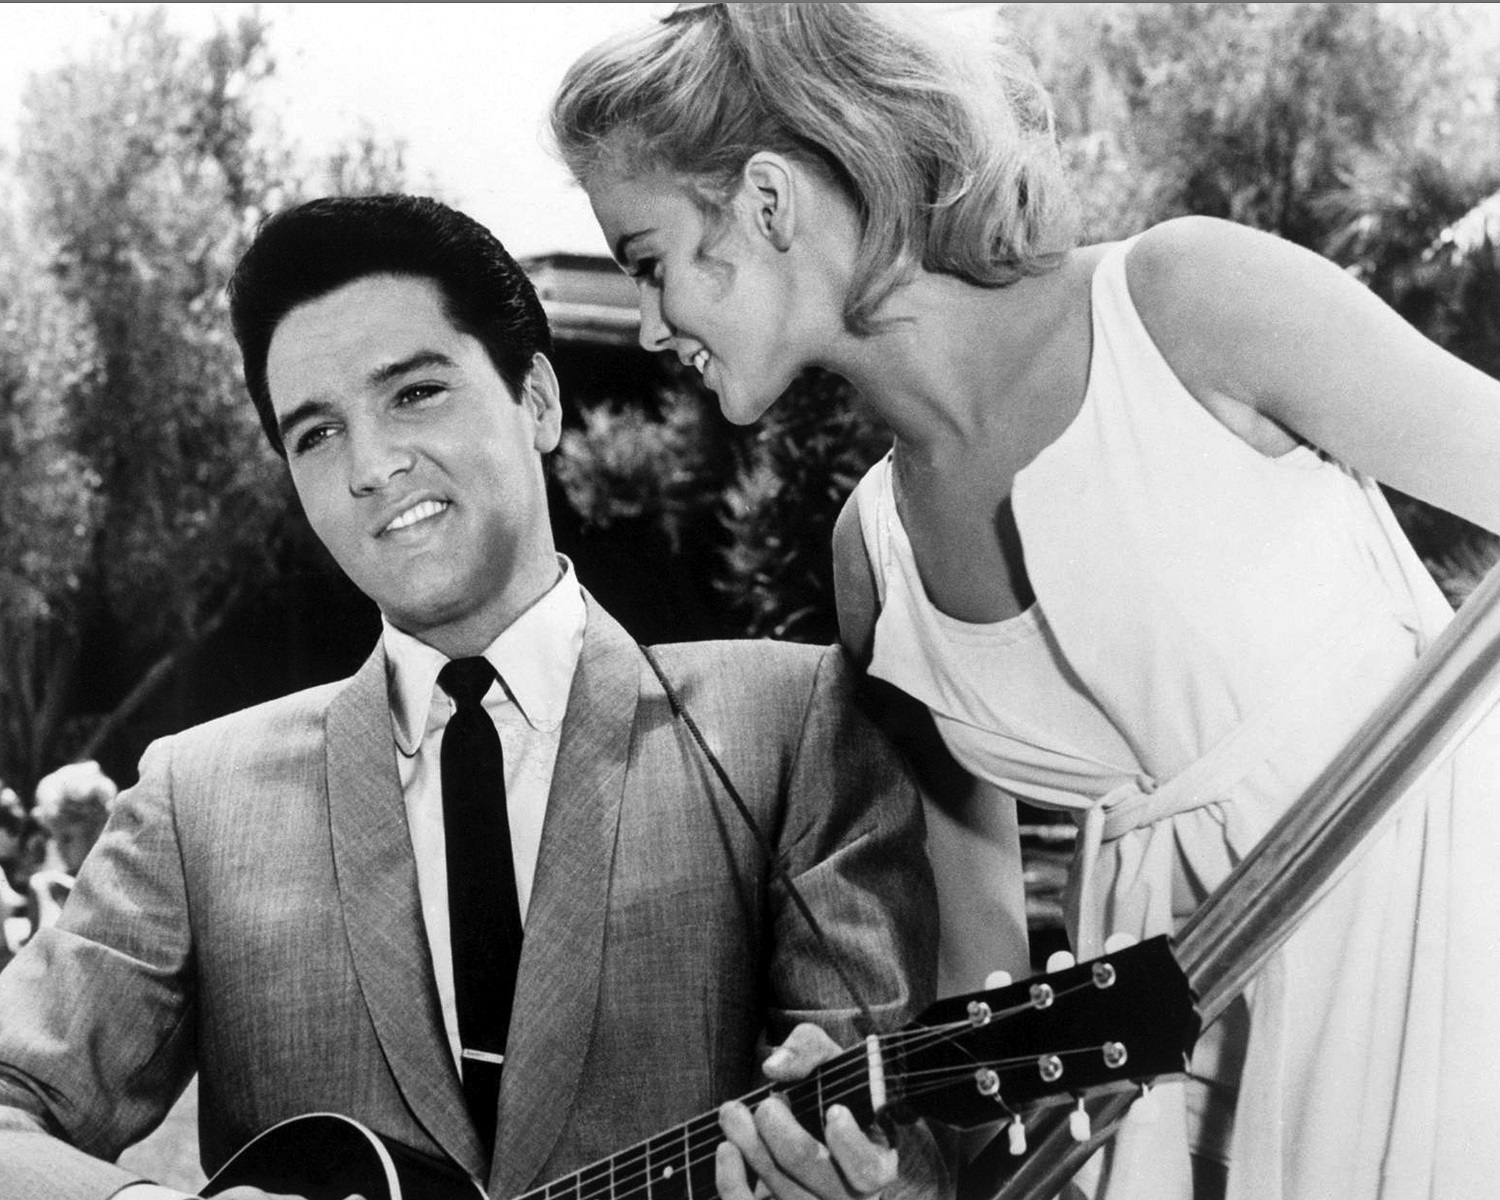 Ann-Margret with Elvis Presley in the musical film Viva Las Vegas